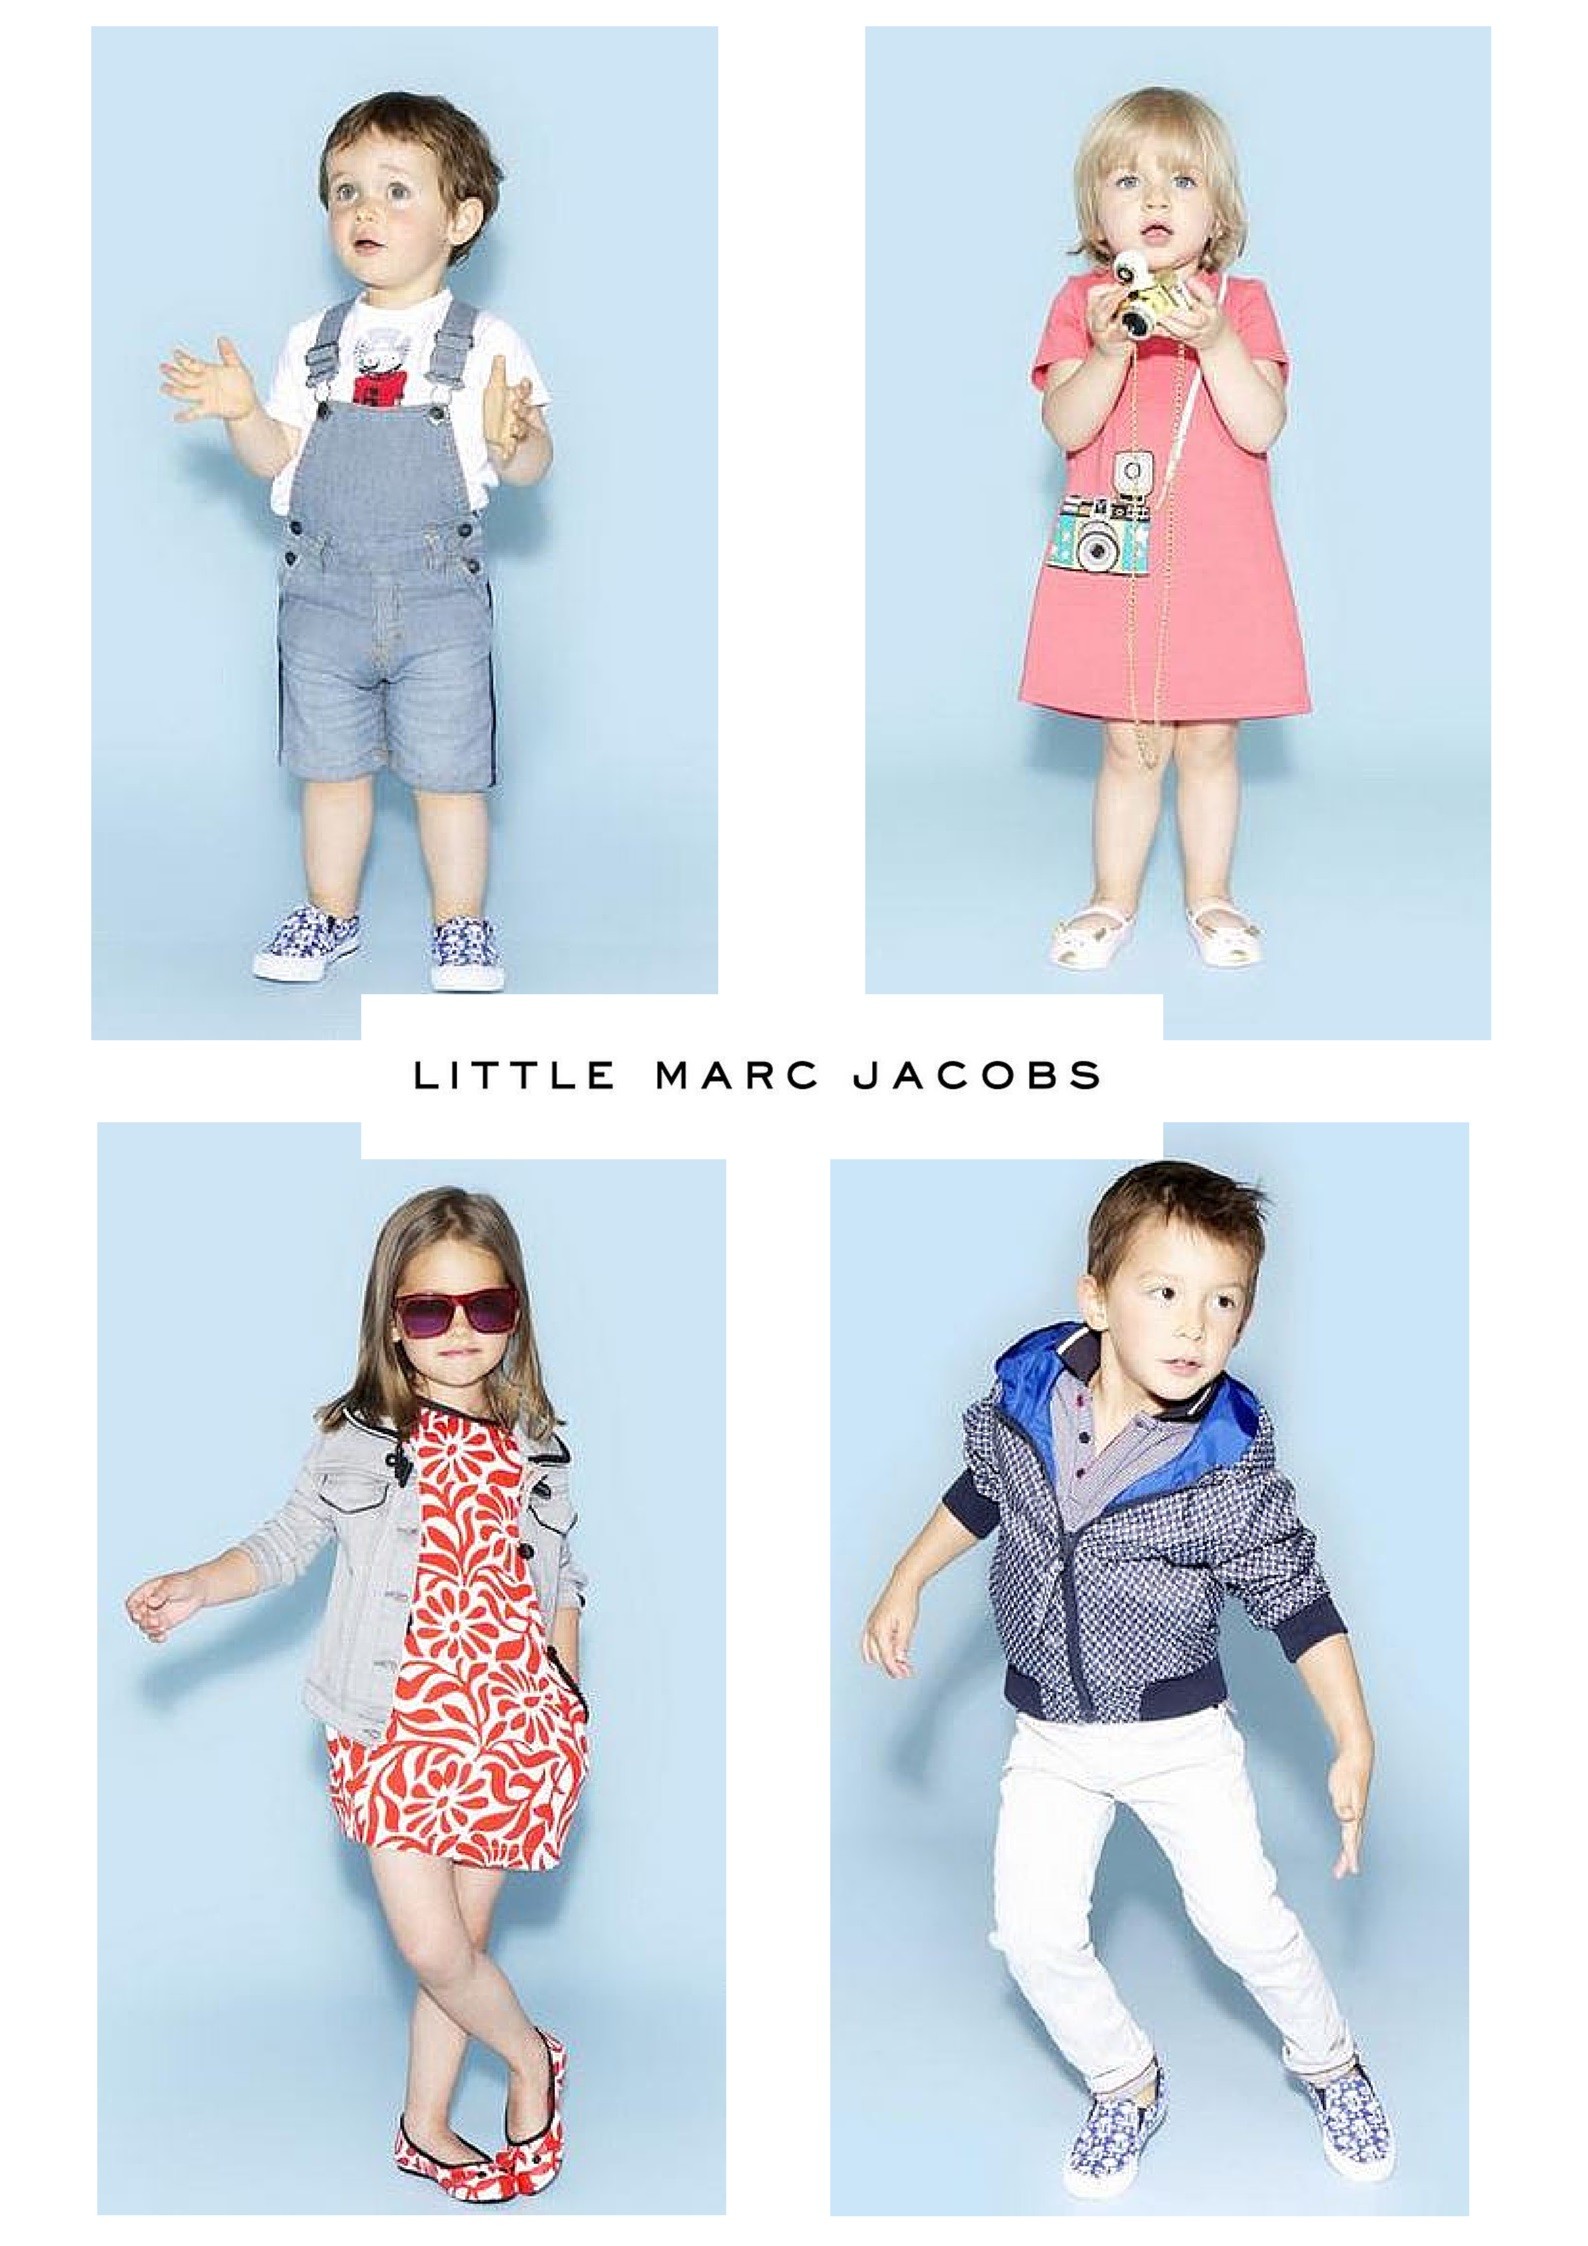 little marc jacobs